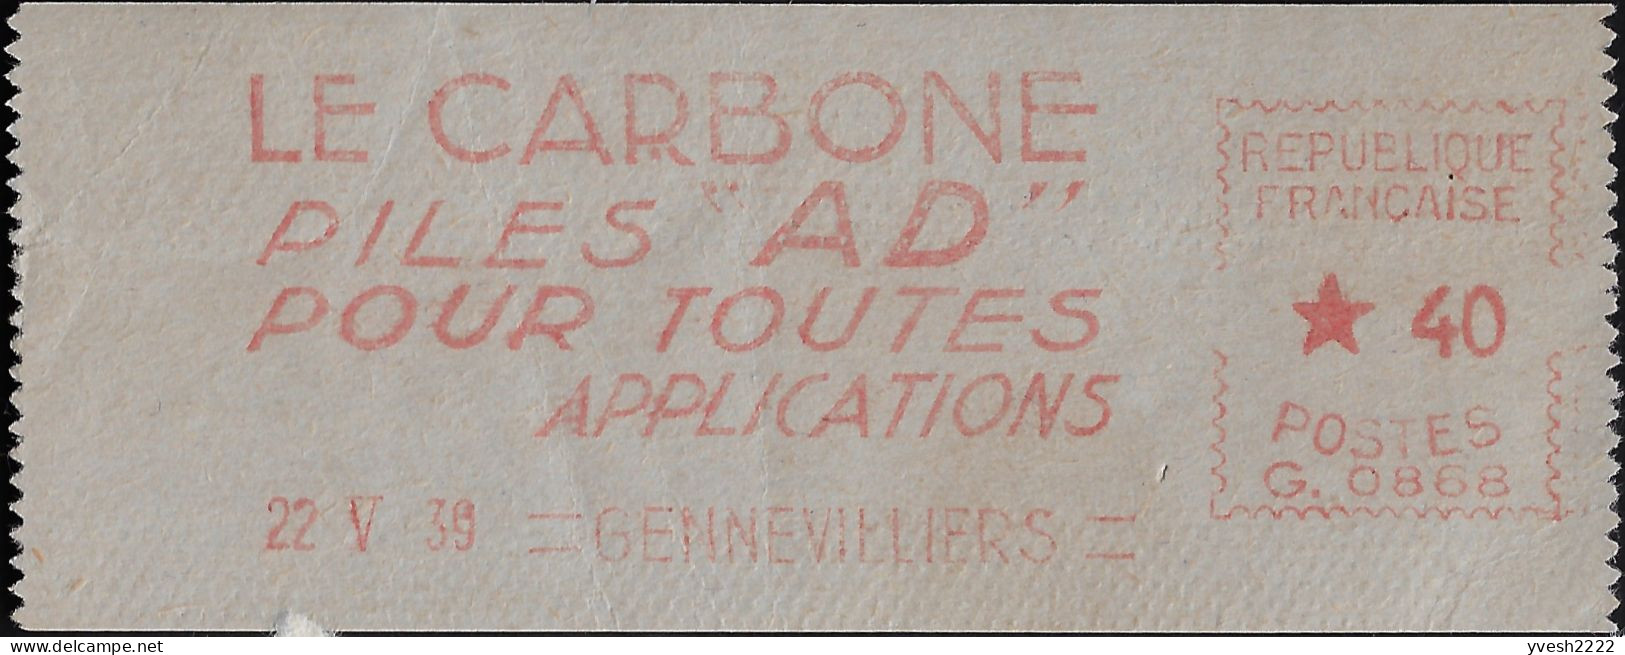 France 1939. Empreinte De Machine à Affranchir. Le Carbone, Piles AD Pour Toutes Applications - Elektriciteit